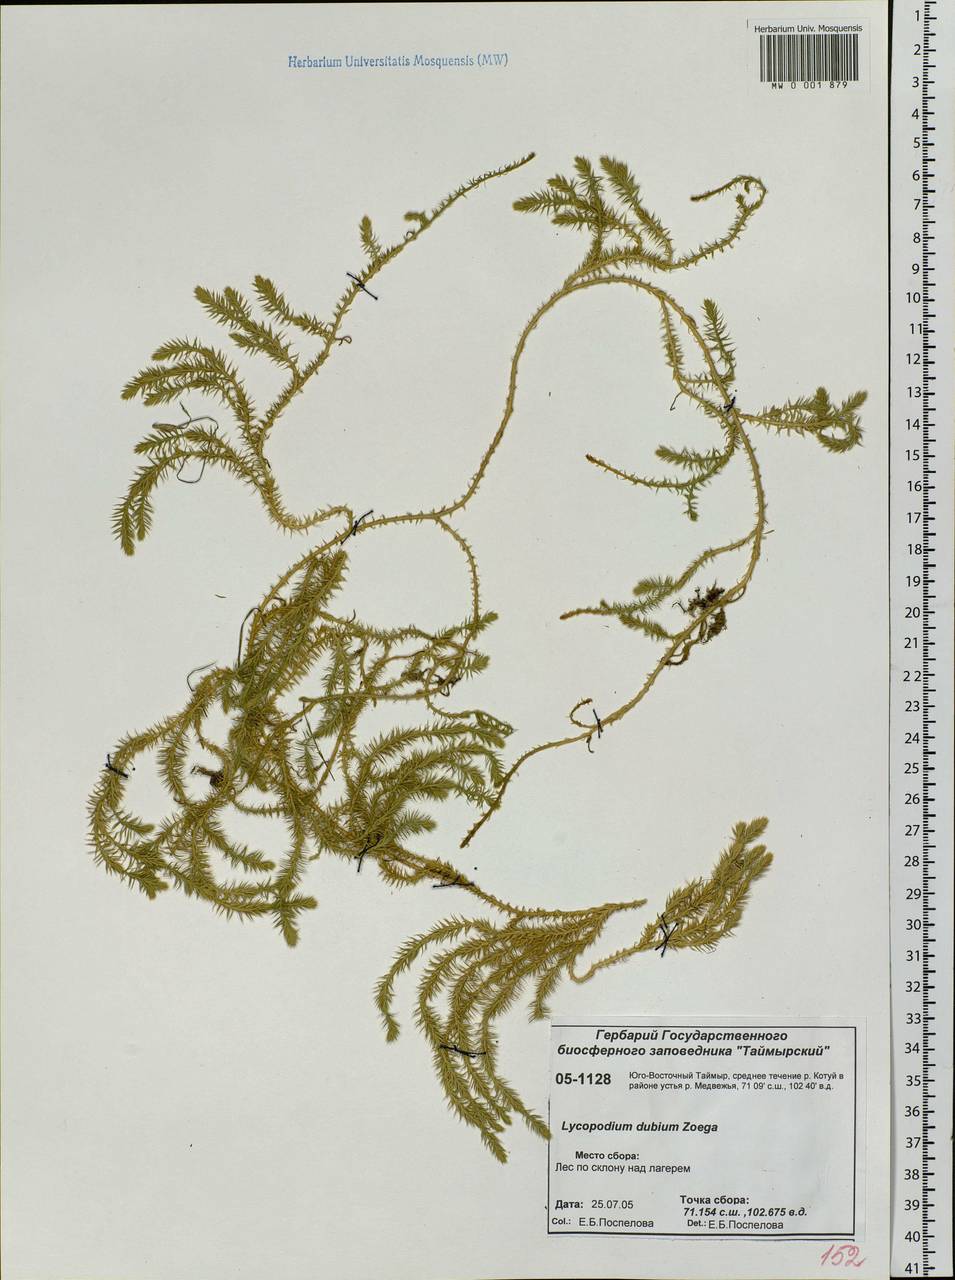 Spinulum annotinum subsp. alpestre (Hartm.) Uotila, Siberia, Central Siberia (S3) (Russia)